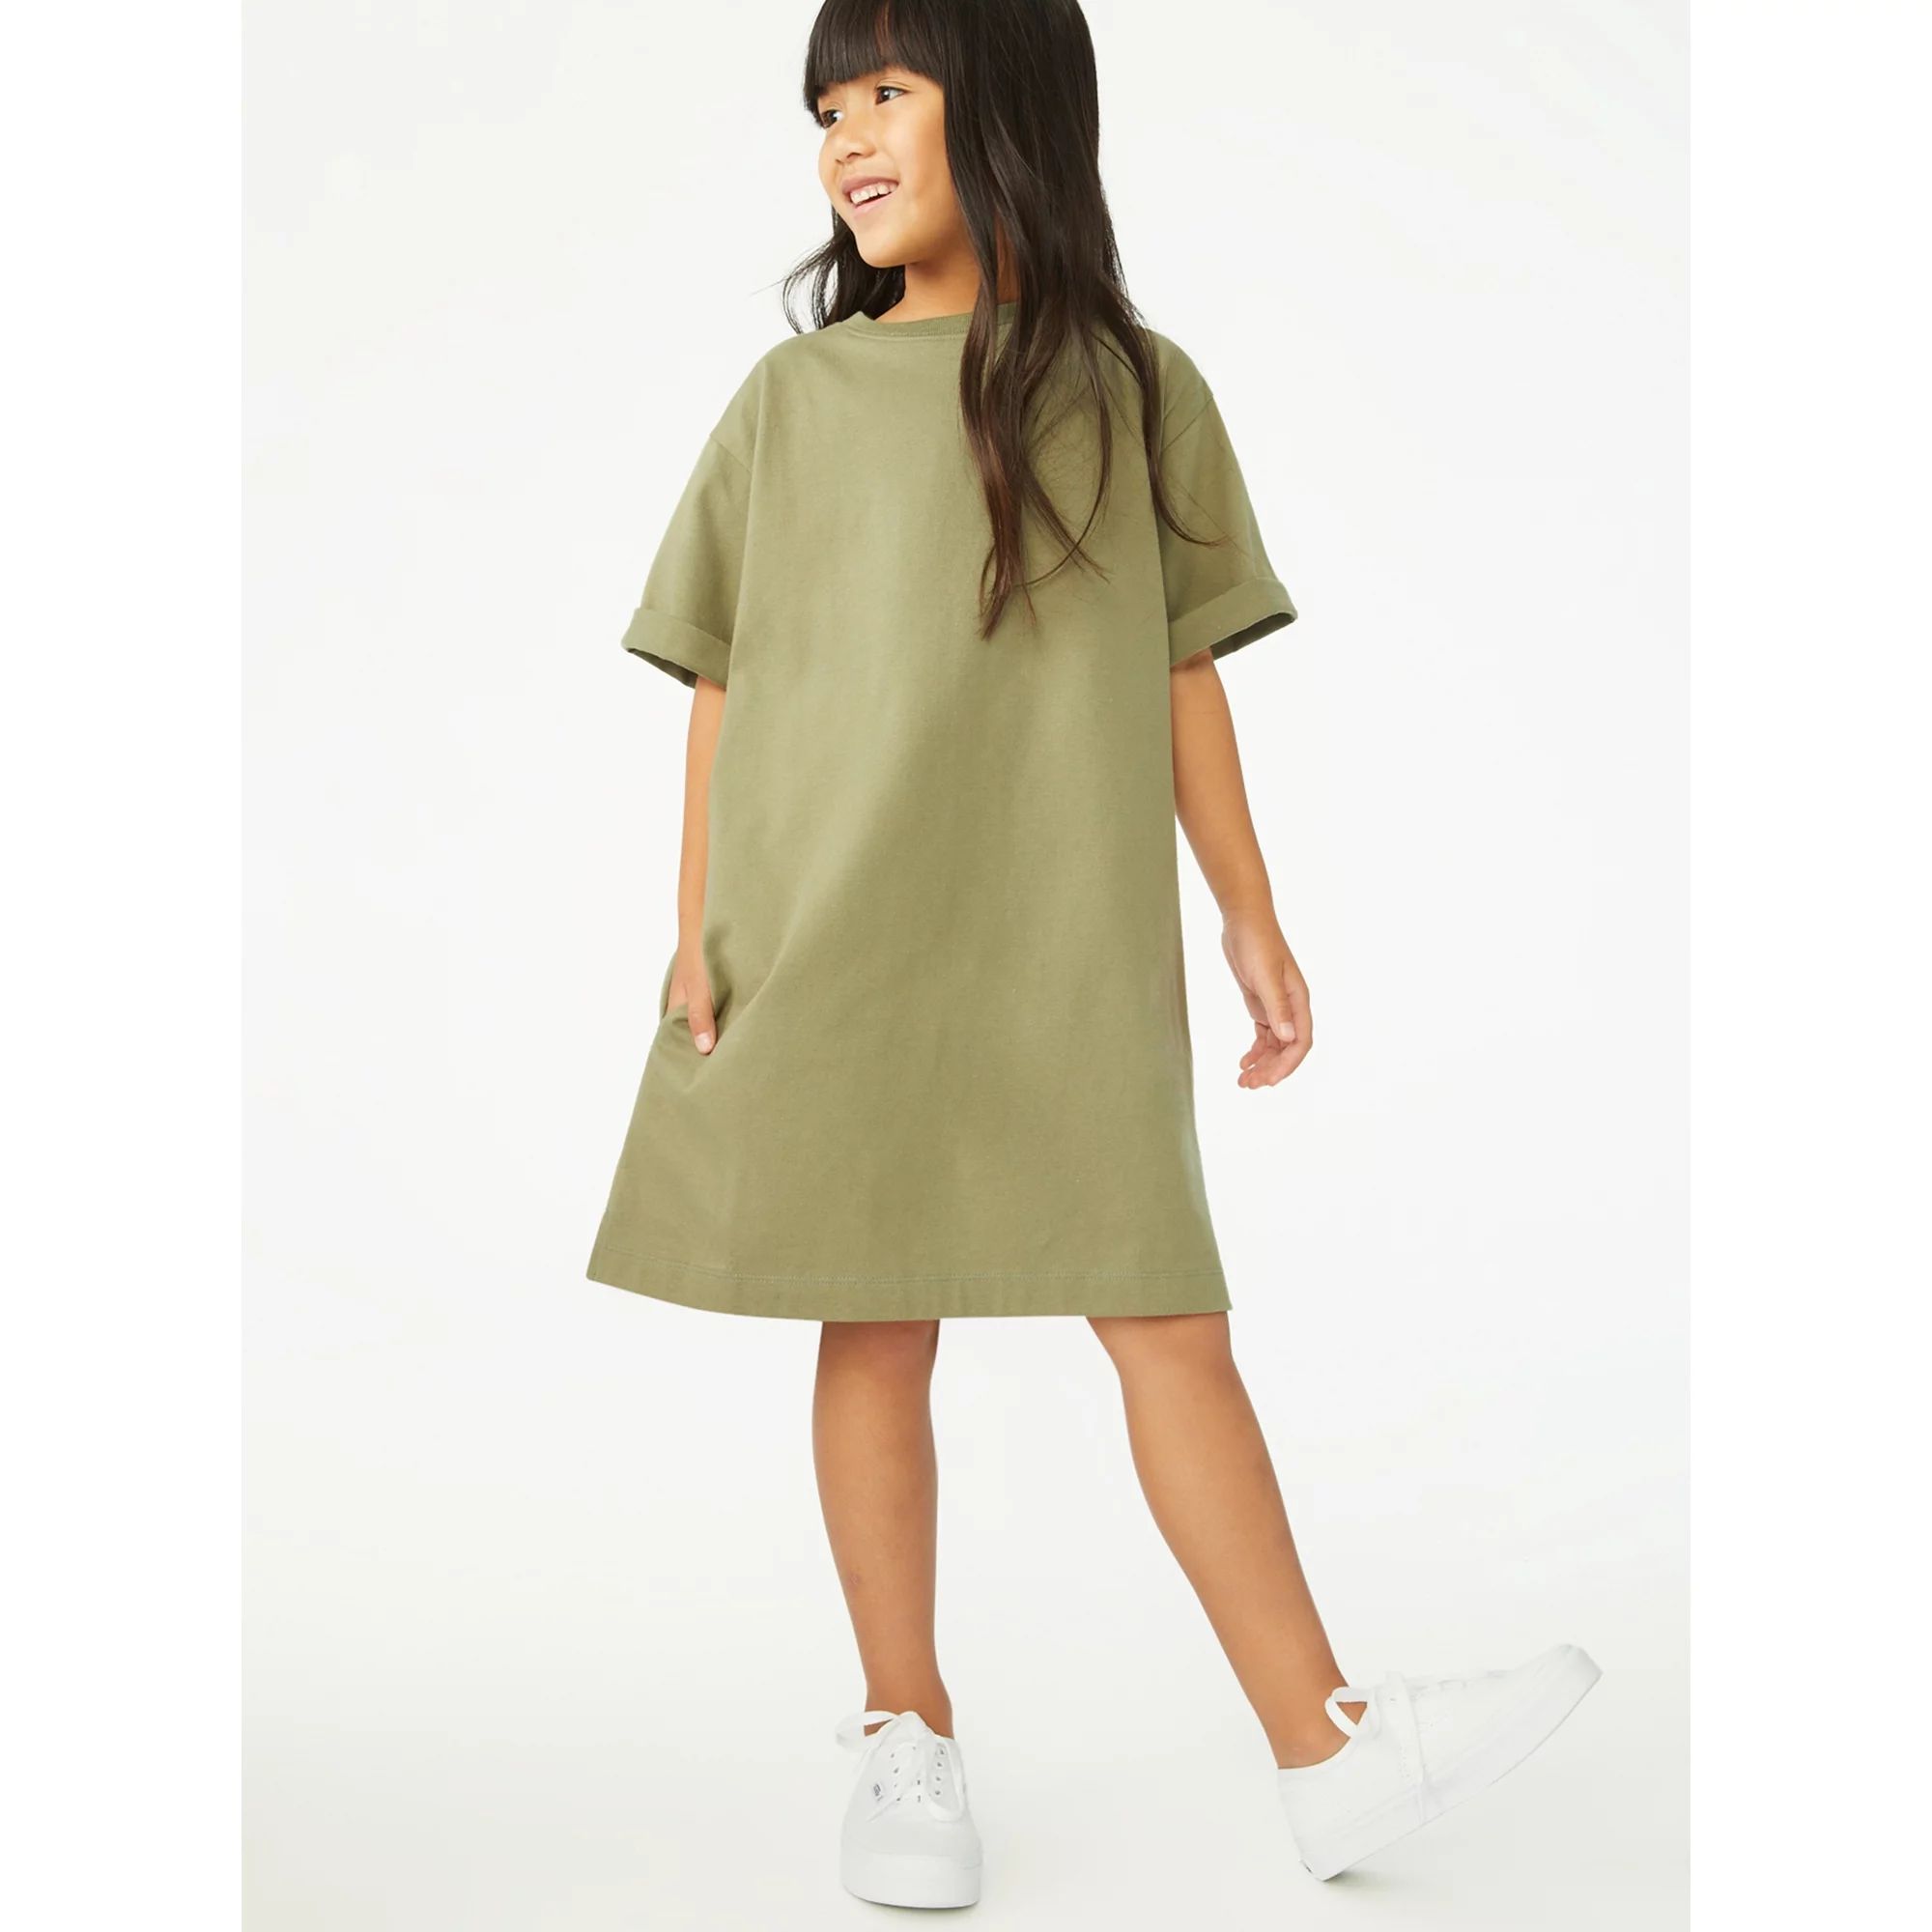 Free Assembly Girls Short Sleeve T-Shirt Dress, Sizes 4-18 - Walmart.com | Walmart (US)